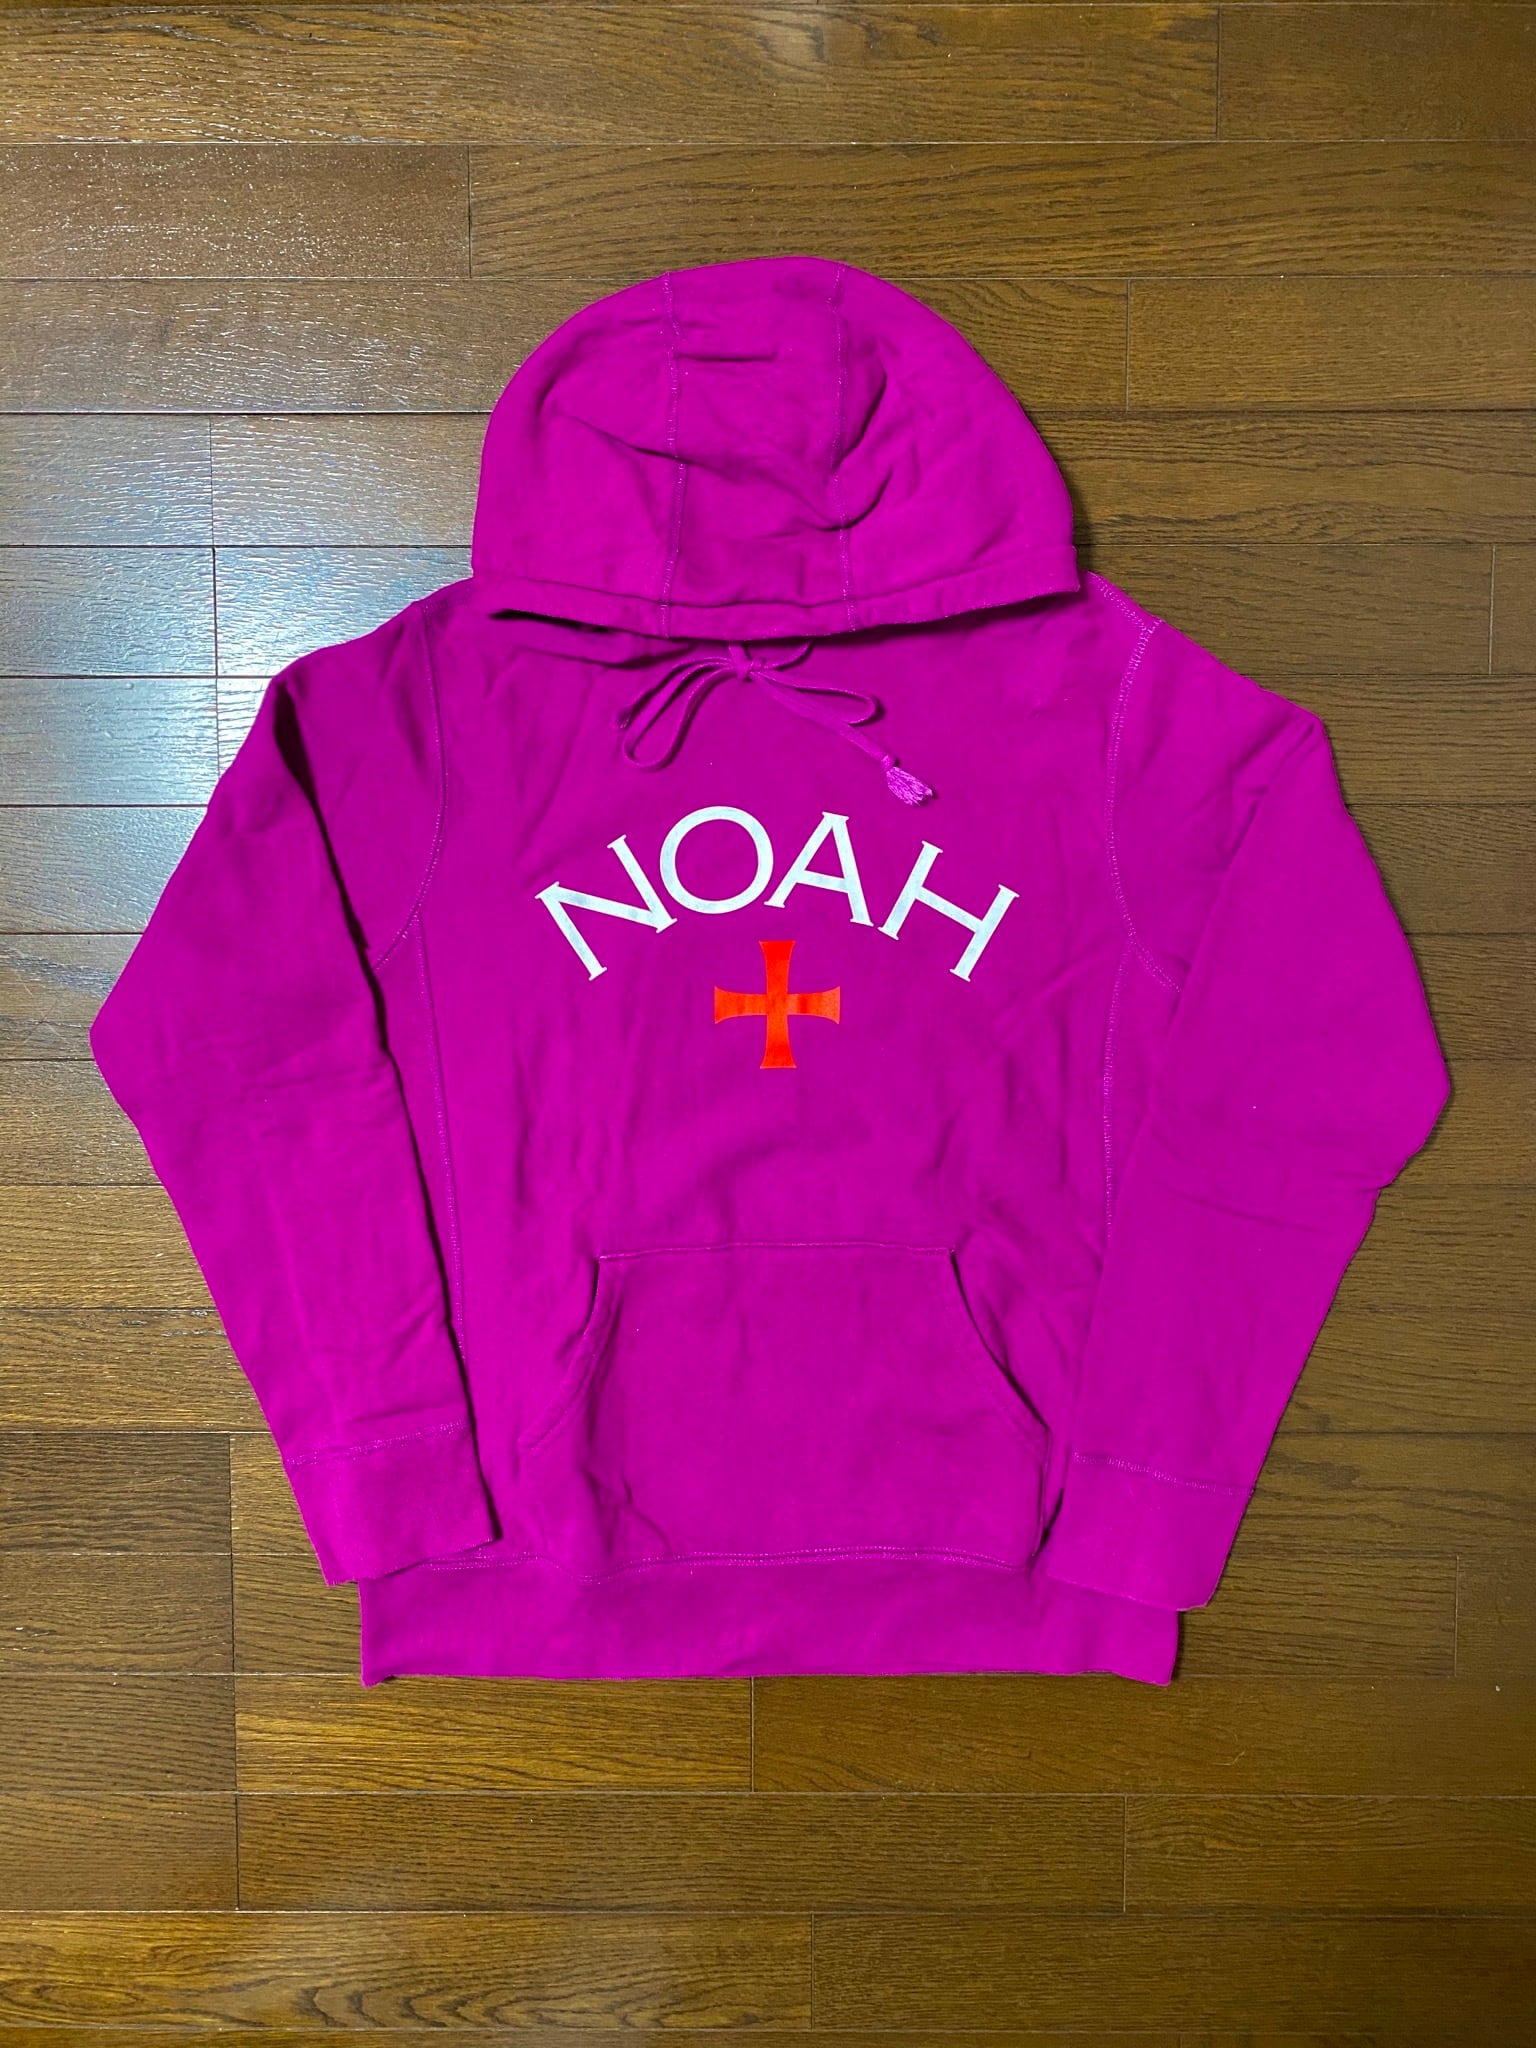 NOAH Hoodie